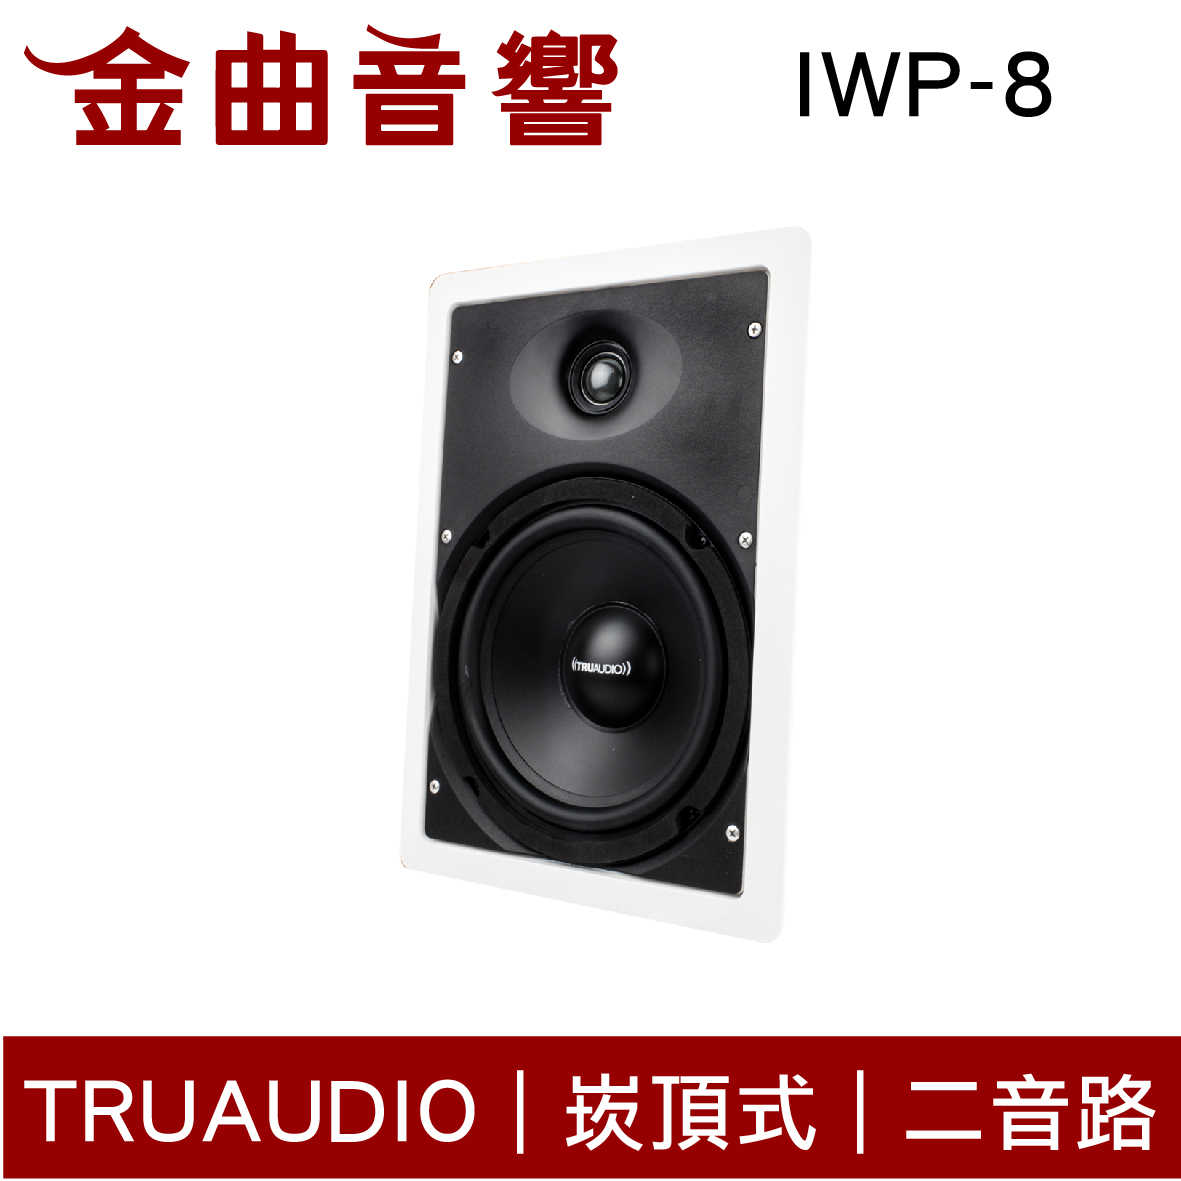 Truaudio IWP-8 入牆式 HIFI高音質 揚聲器 一對 | 金曲音響